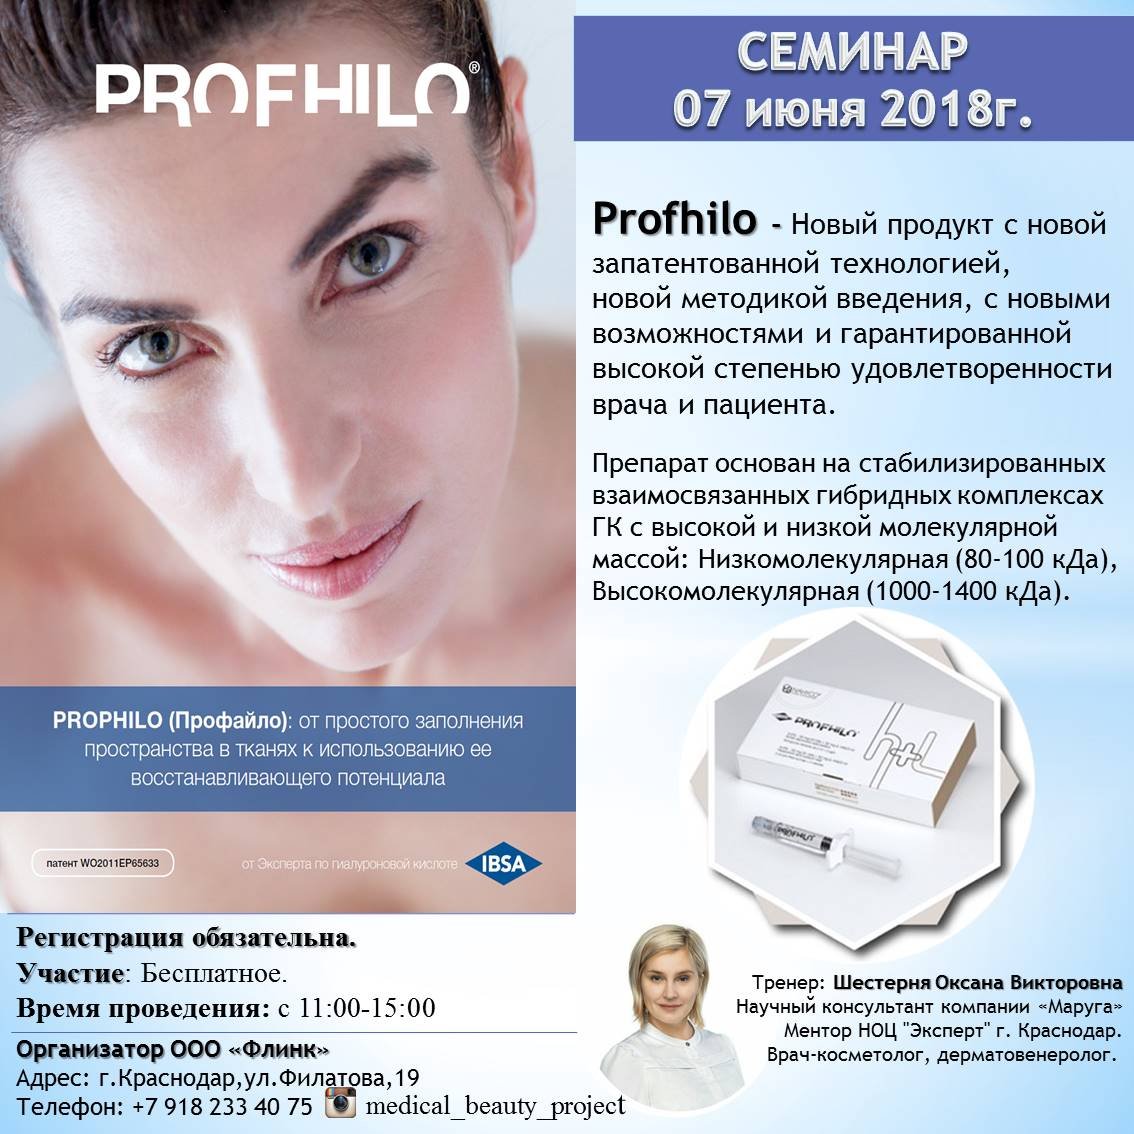 Profhilo - новый уровень инъекционных методов!